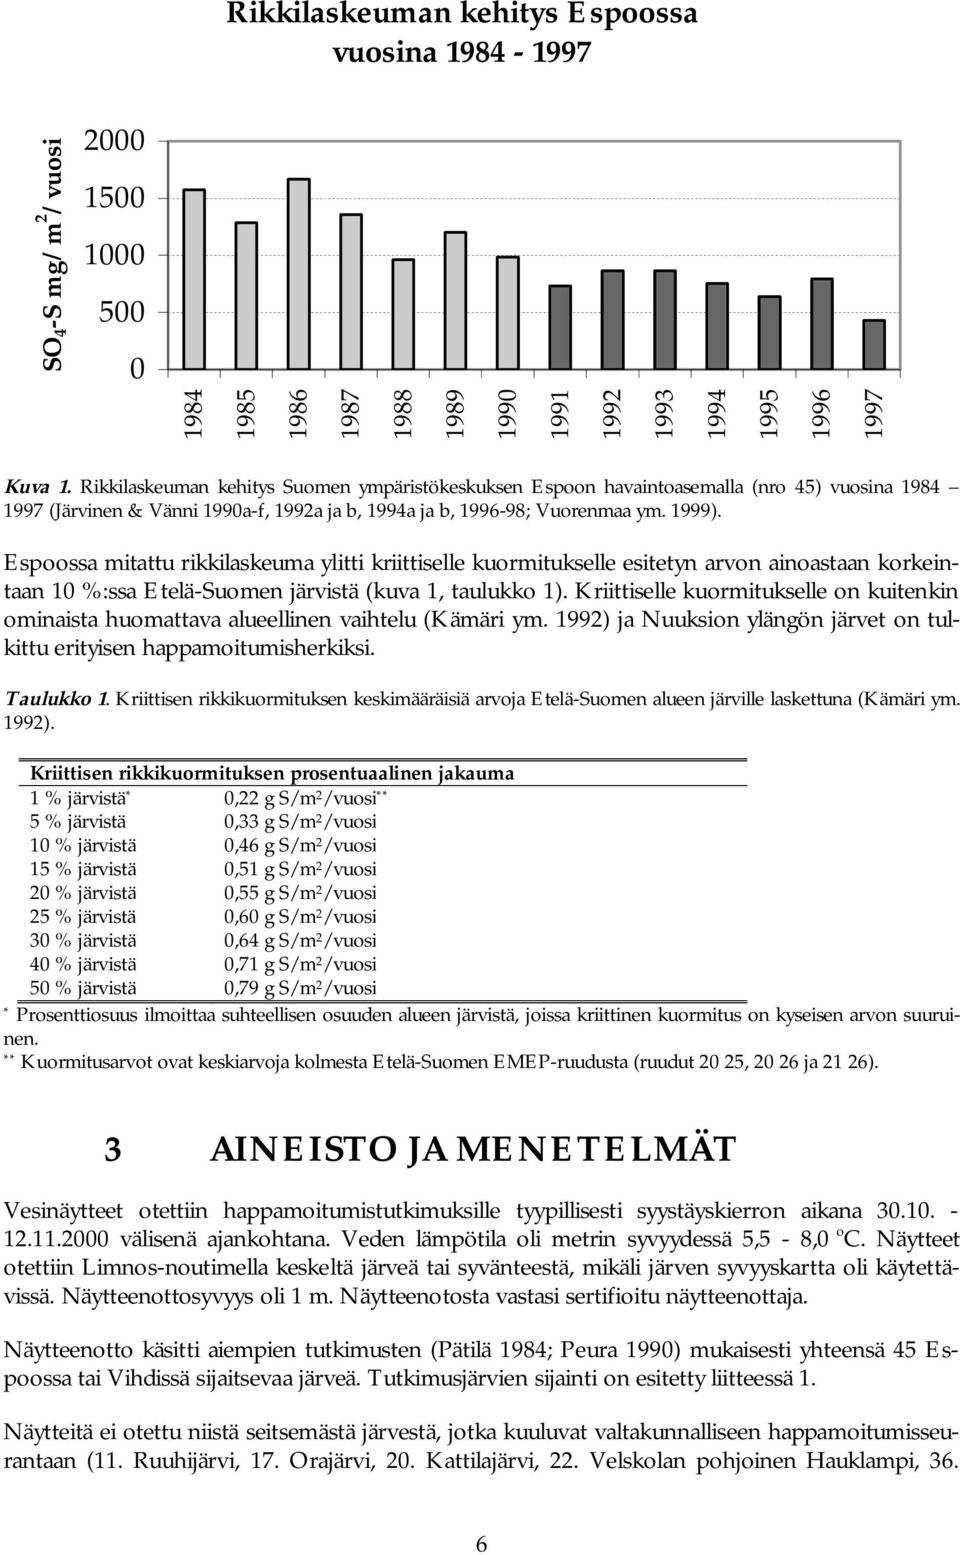 Espoossa mitattu rikkilaskeuma ylitti kriittiselle kuormitukselle esitetyn arvon ainoastaan korkeintaan 10 %:ssa Etelä-Suomen järvistä (kuva 1, taulukko 1).